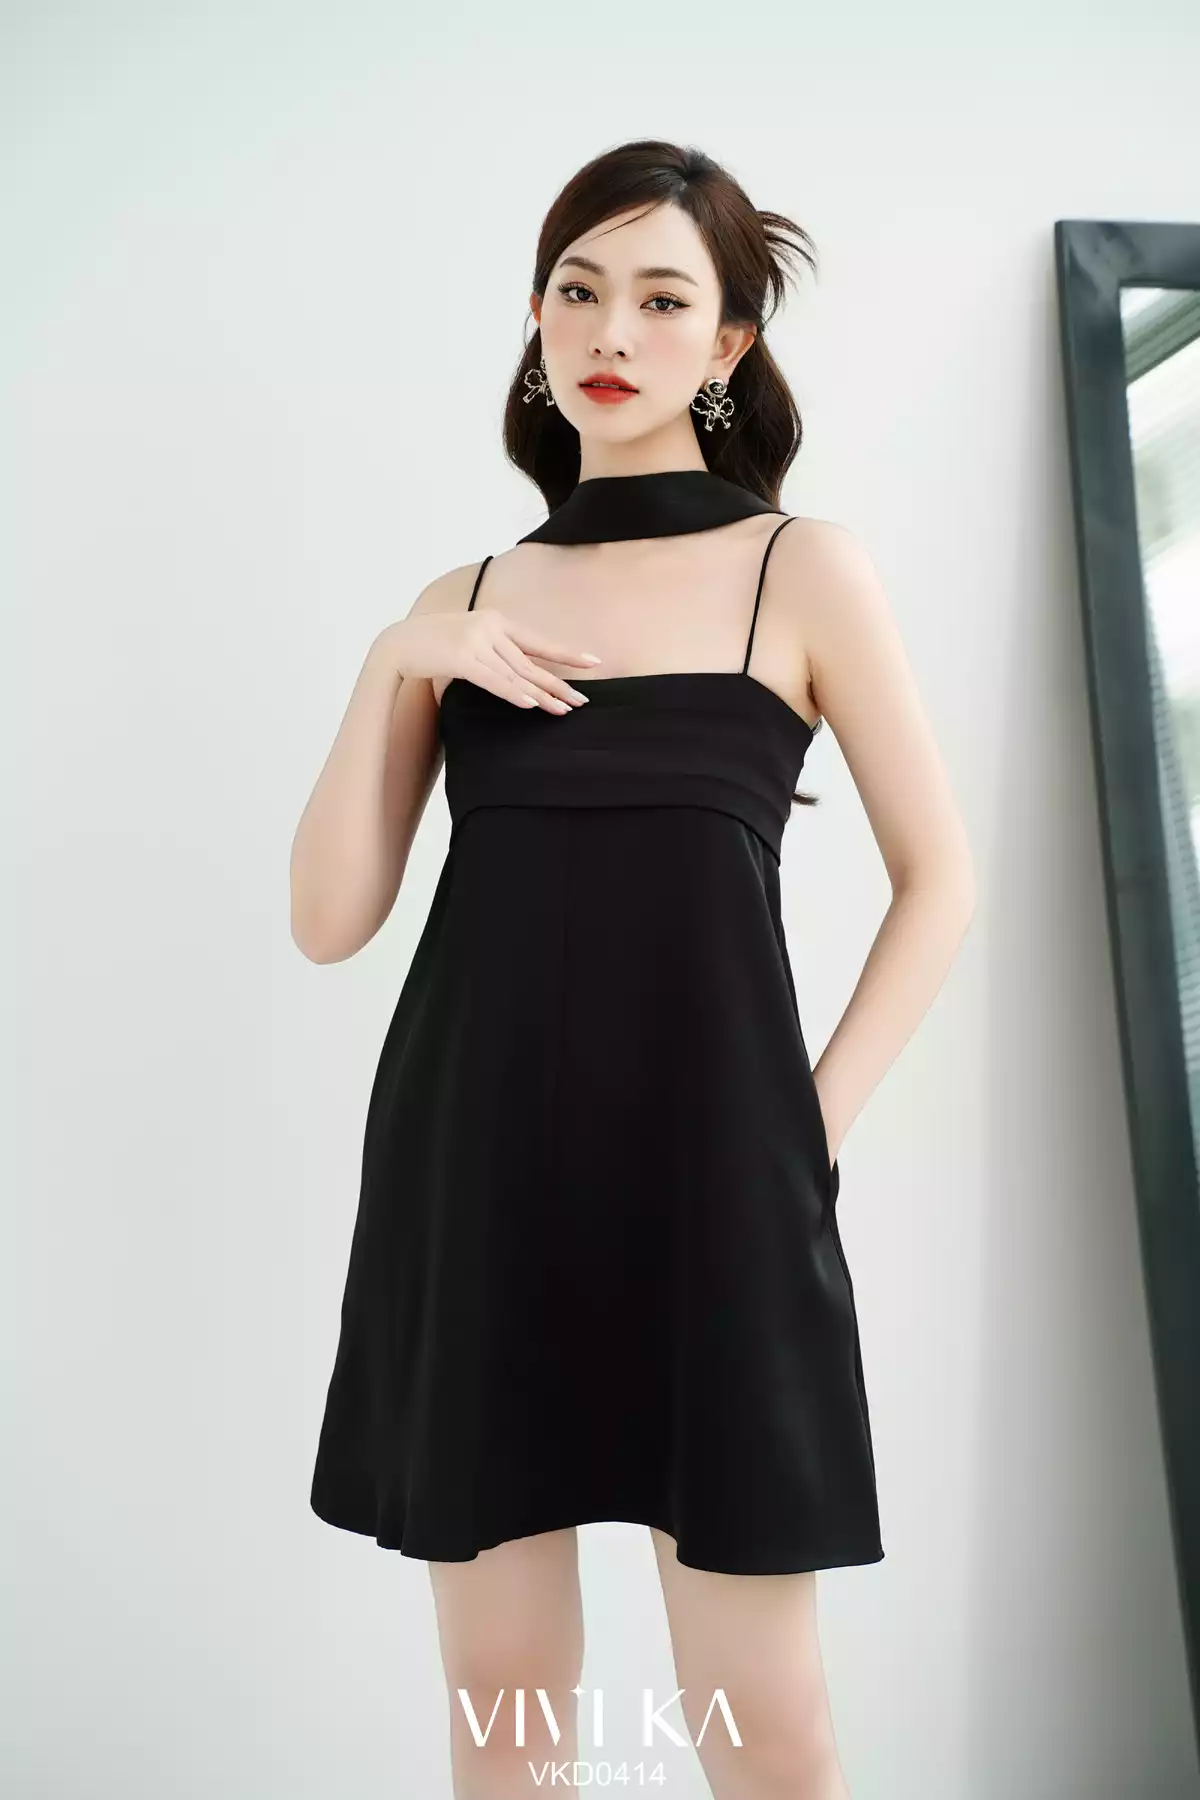 Dây xích 2 lớp tết hình trái tim đeo thắt lưng, phụ kiện trang trí váy,  quần cho nữ | Shopee Việt Nam